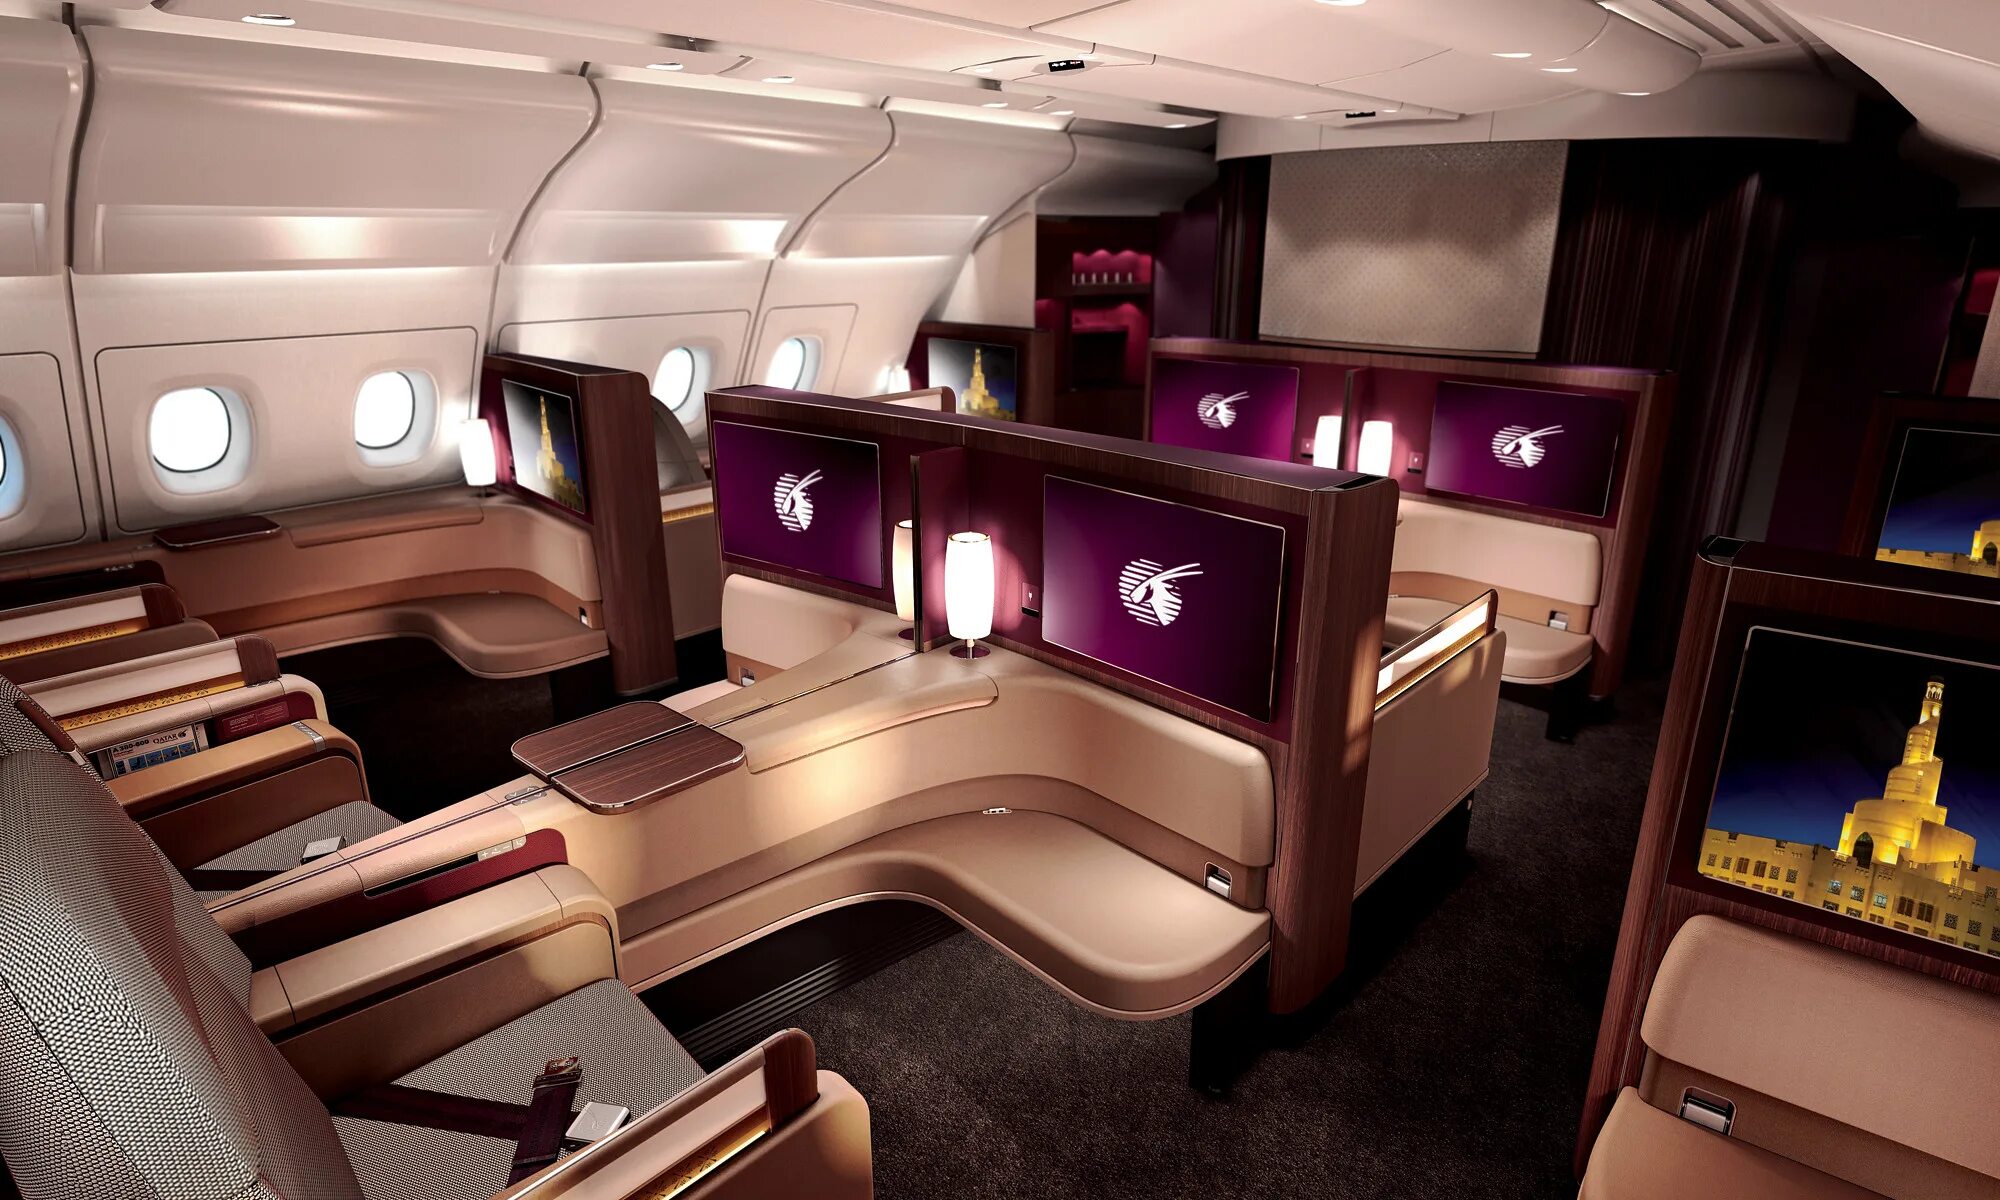 First class going first class. Airbus a380 арабского шейха. Катар Эйрвейз первый класс. Airbus a380 внутри. Qatar Airways 1 класс.